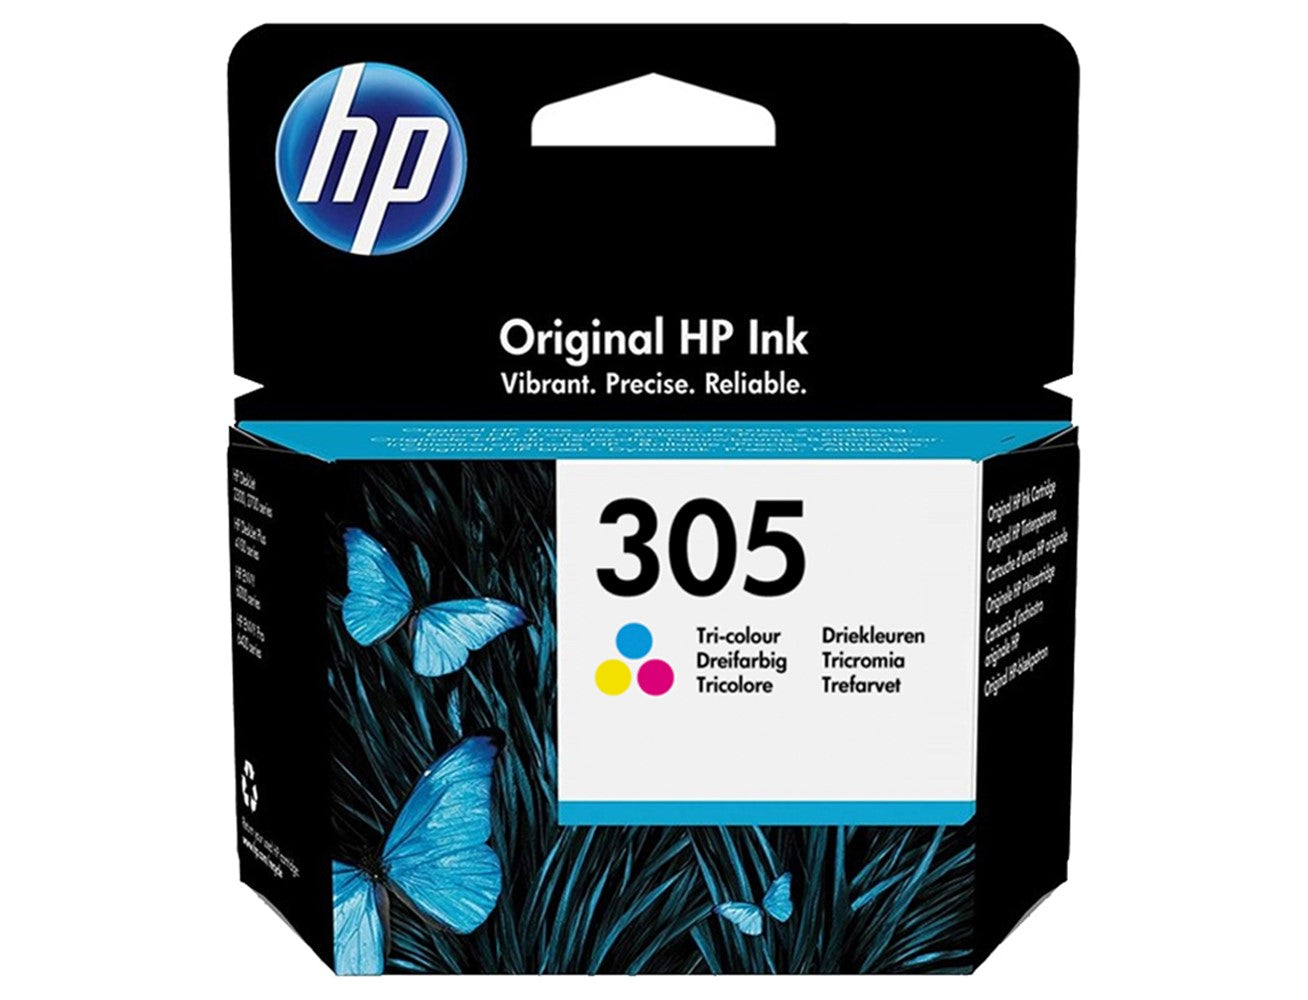 HP 305 Original Tri-color Ink Cartridge